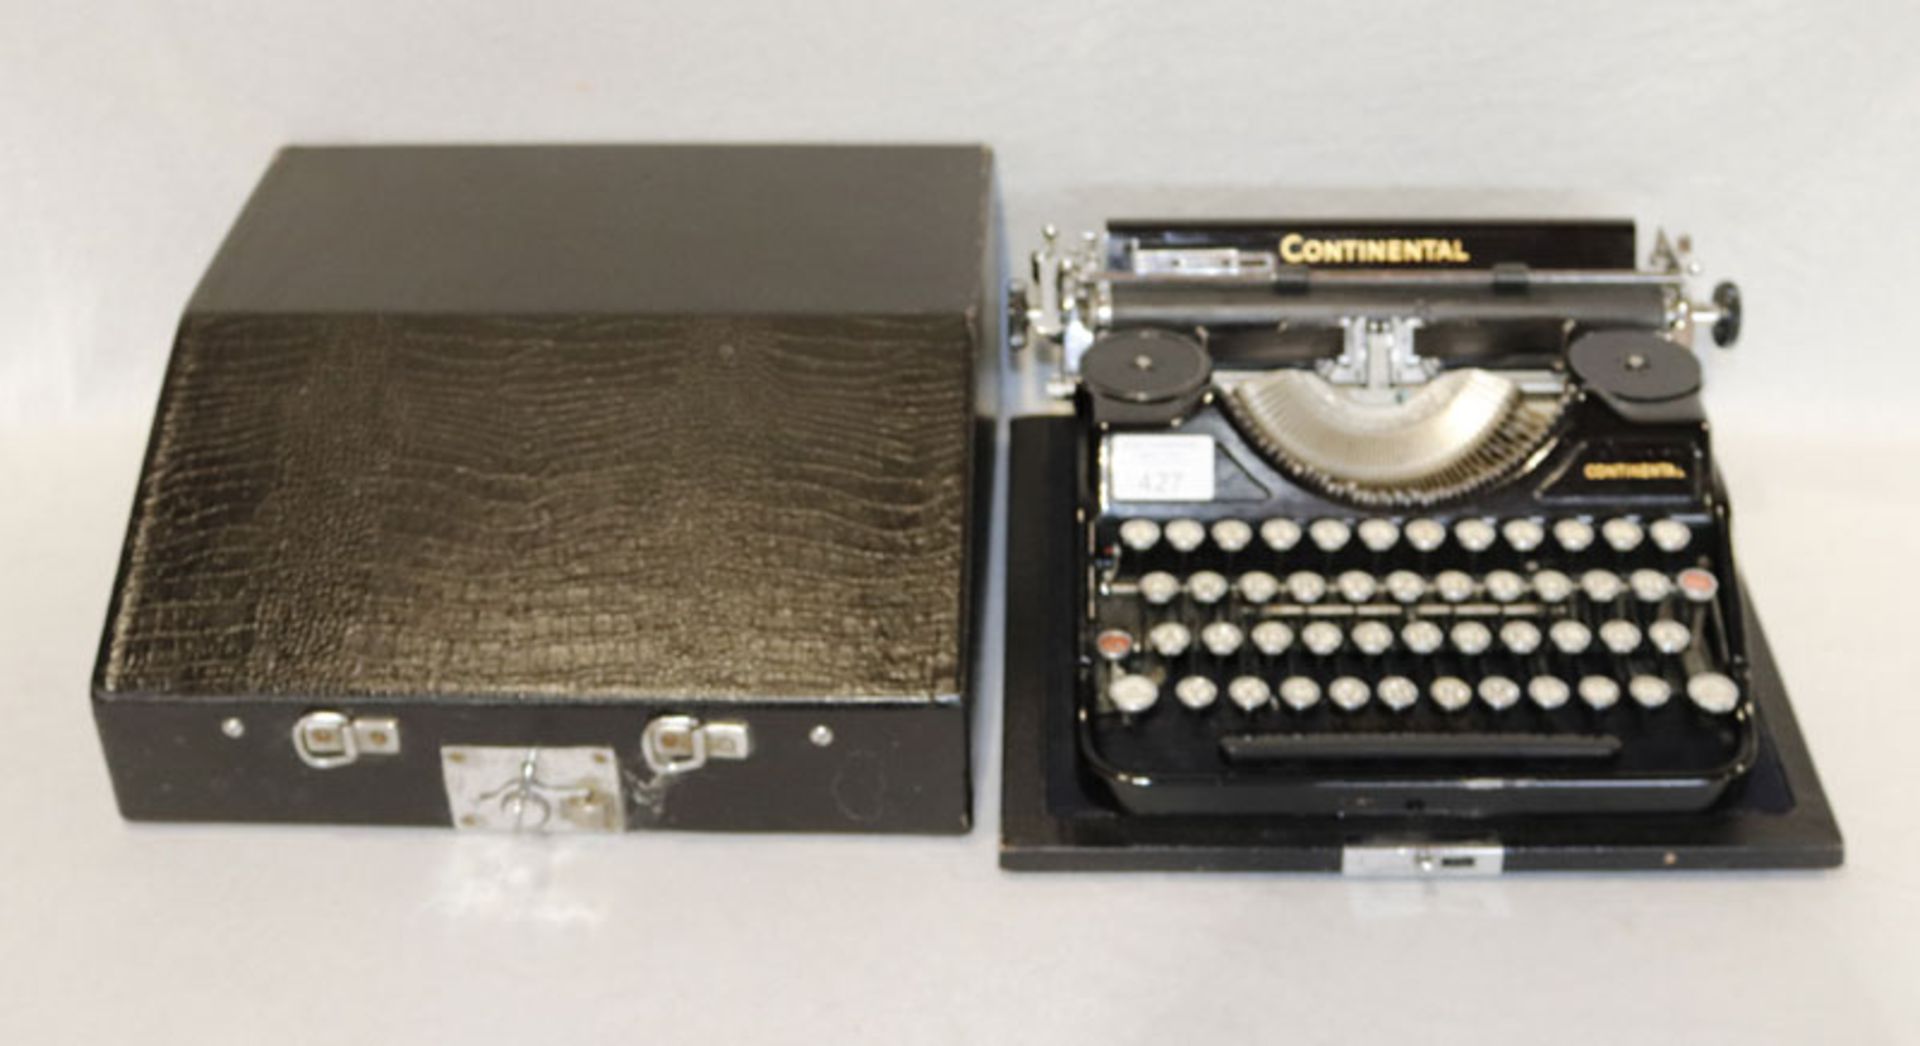 Reise-Schreibmaschine Continental, in Koffer, Gebrauchsspuren